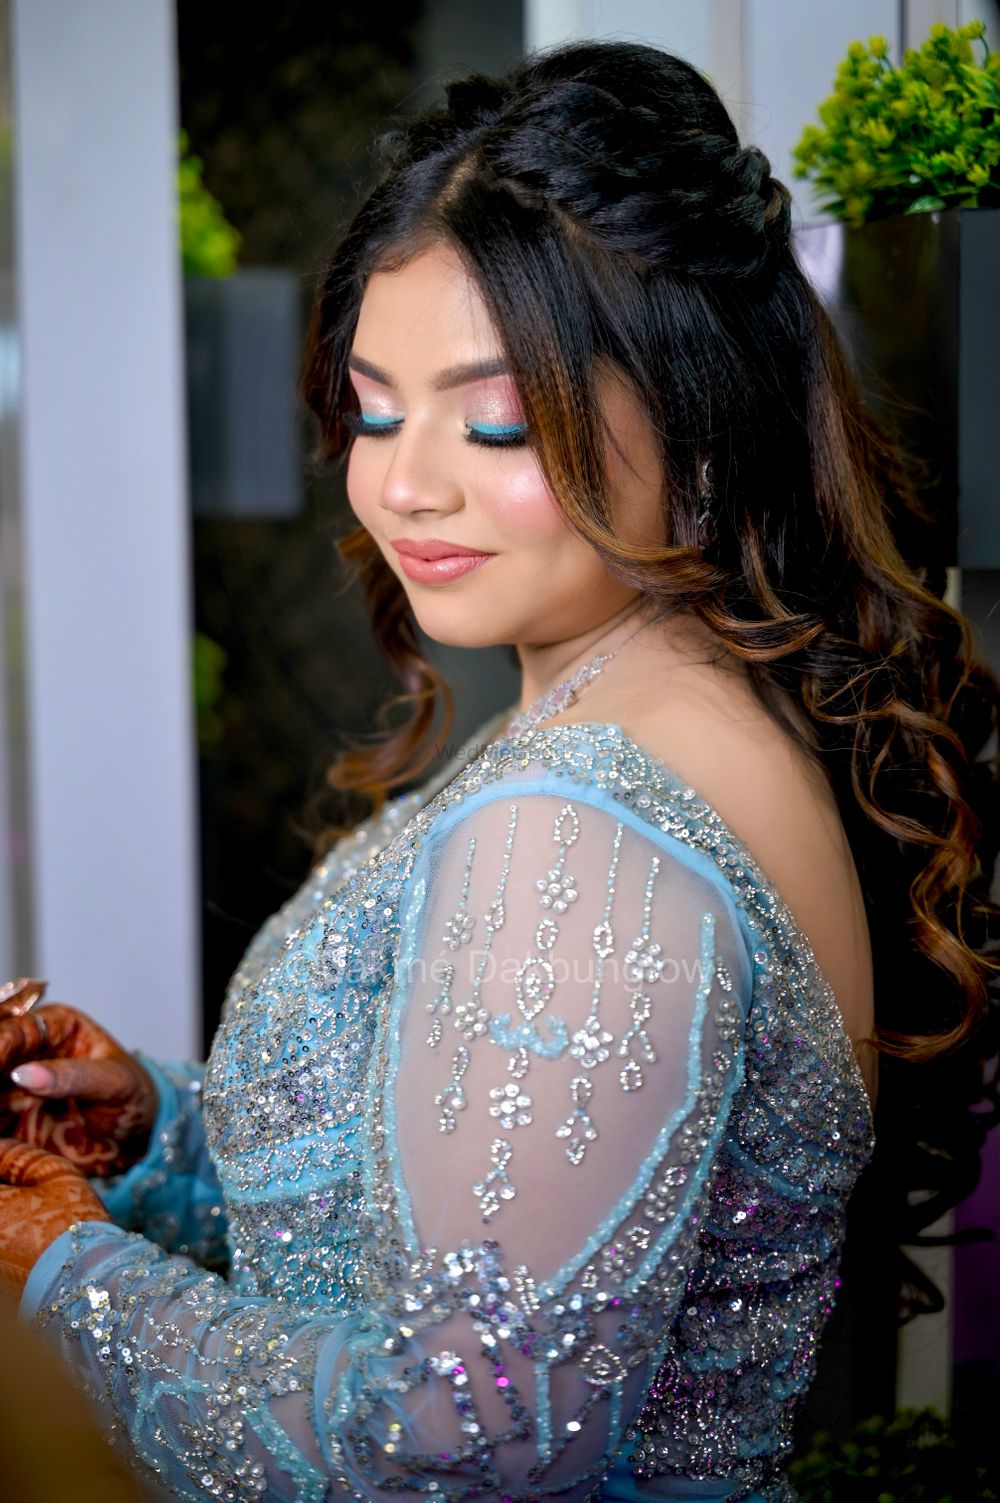 Photo By Lakme Salon, Dakbunglow - Bridal Makeup